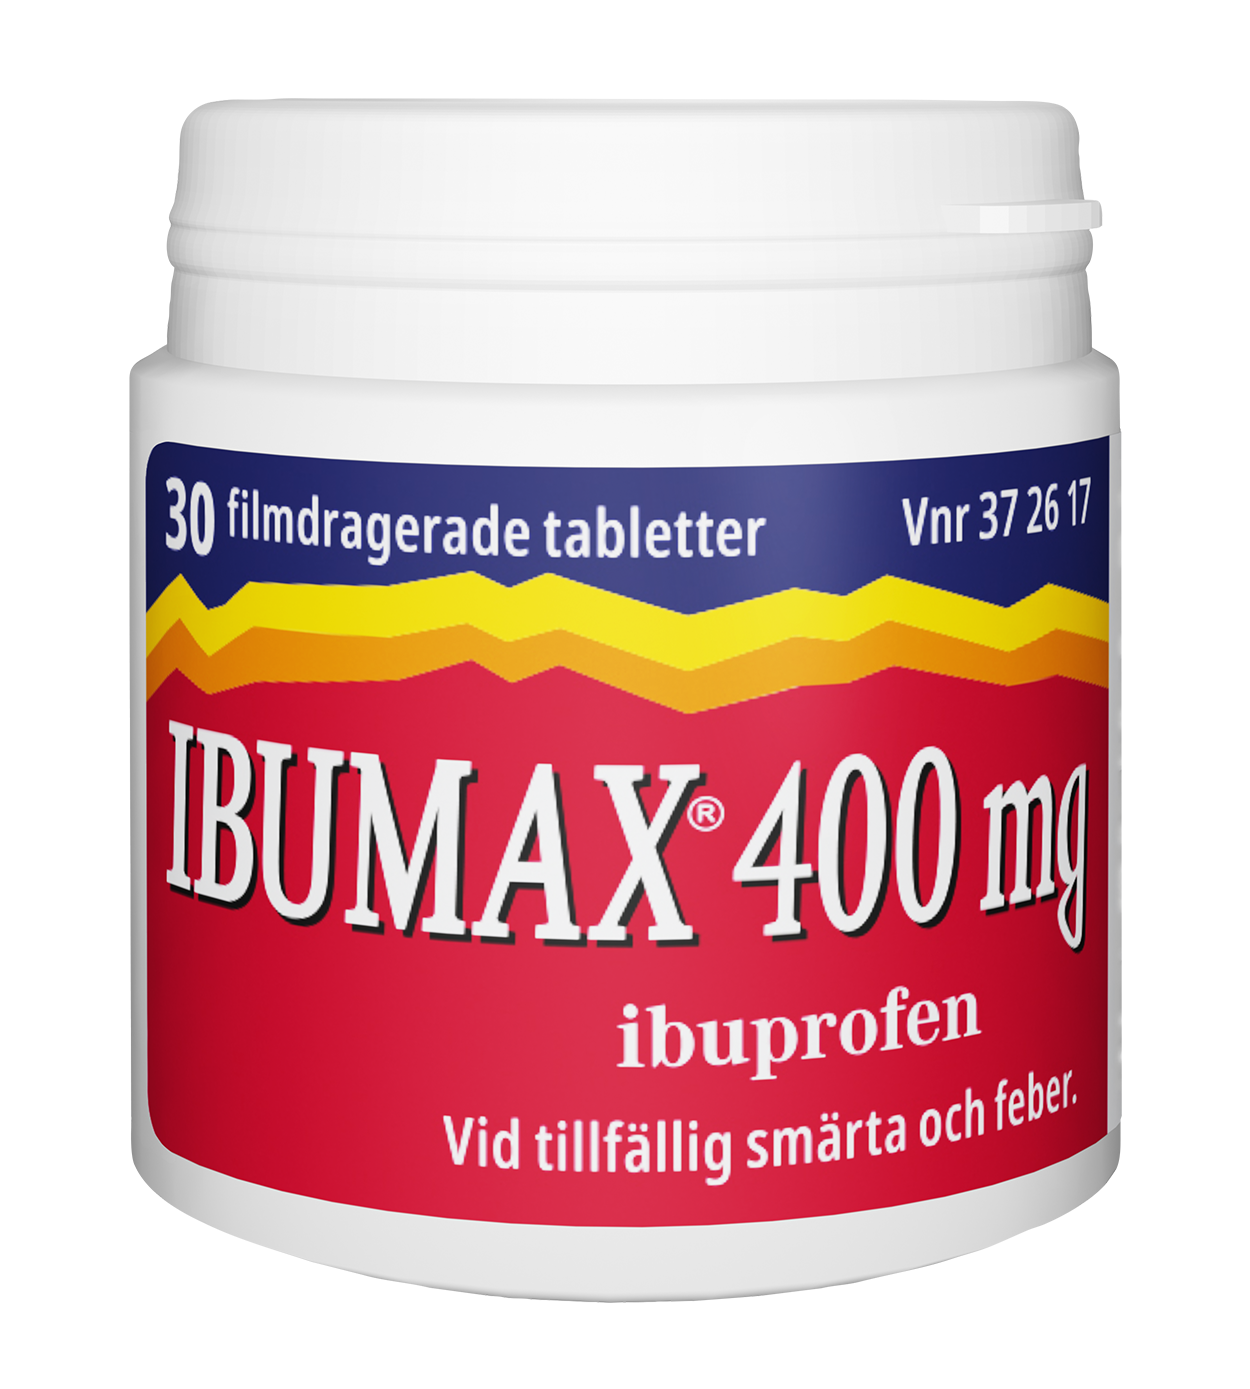 Ibumax 400 mg Ibuprofen Burk 30 tabletter